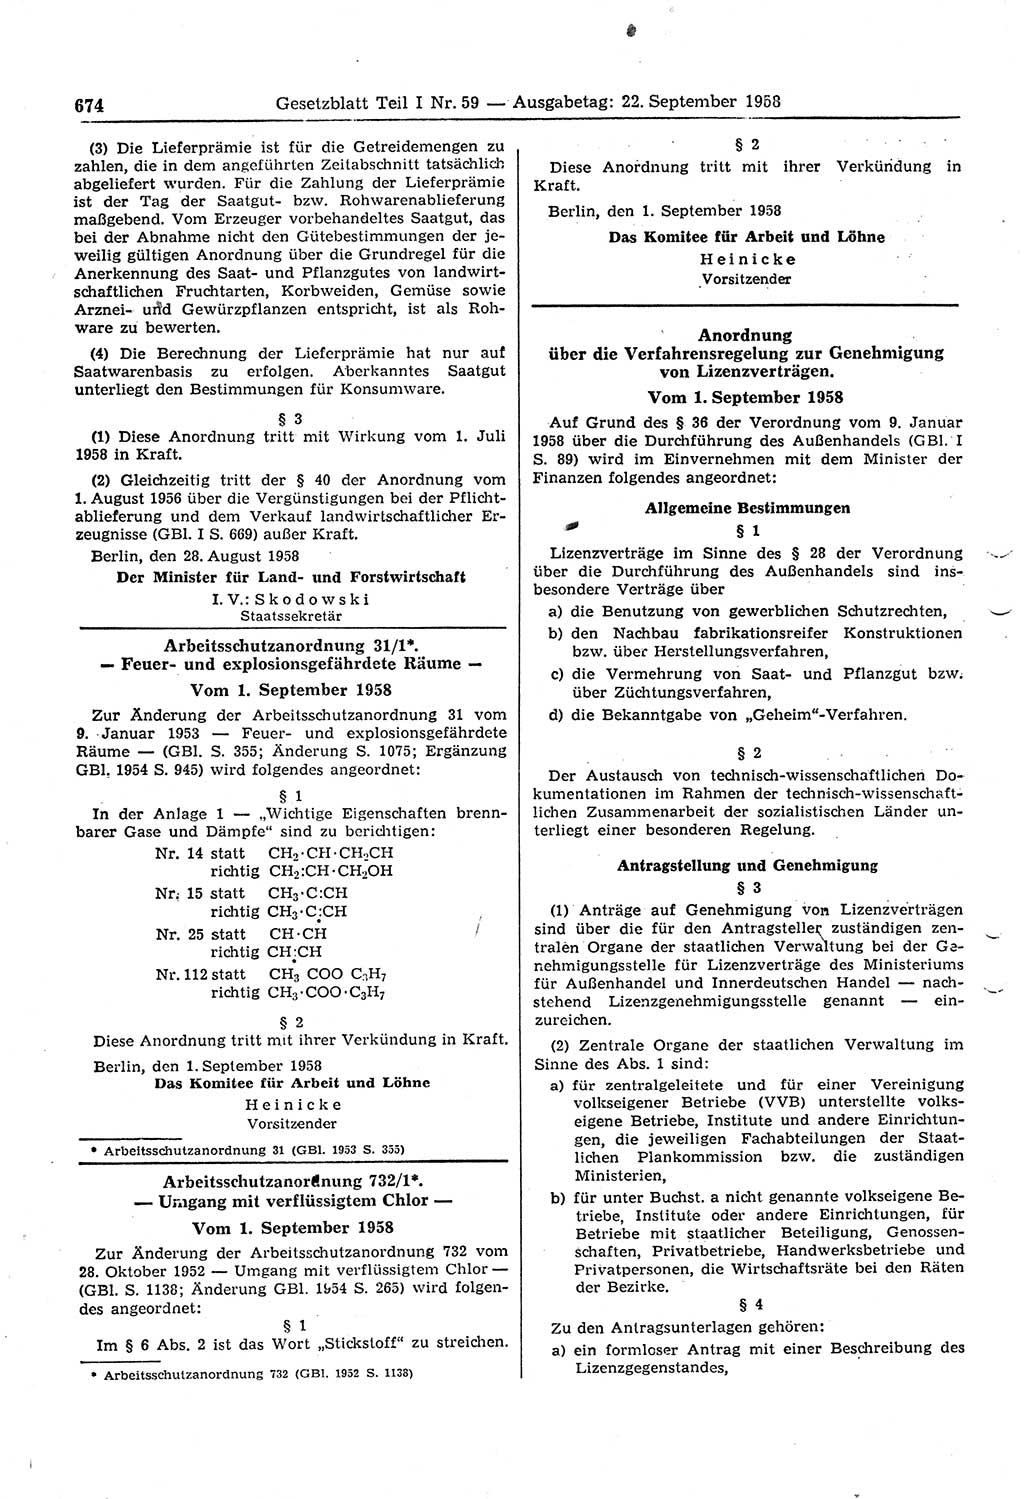 Gesetzblatt (GBl.) der Deutschen Demokratischen Republik (DDR) Teil Ⅰ 1958, Seite 674 (GBl. DDR Ⅰ 1958, S. 674)